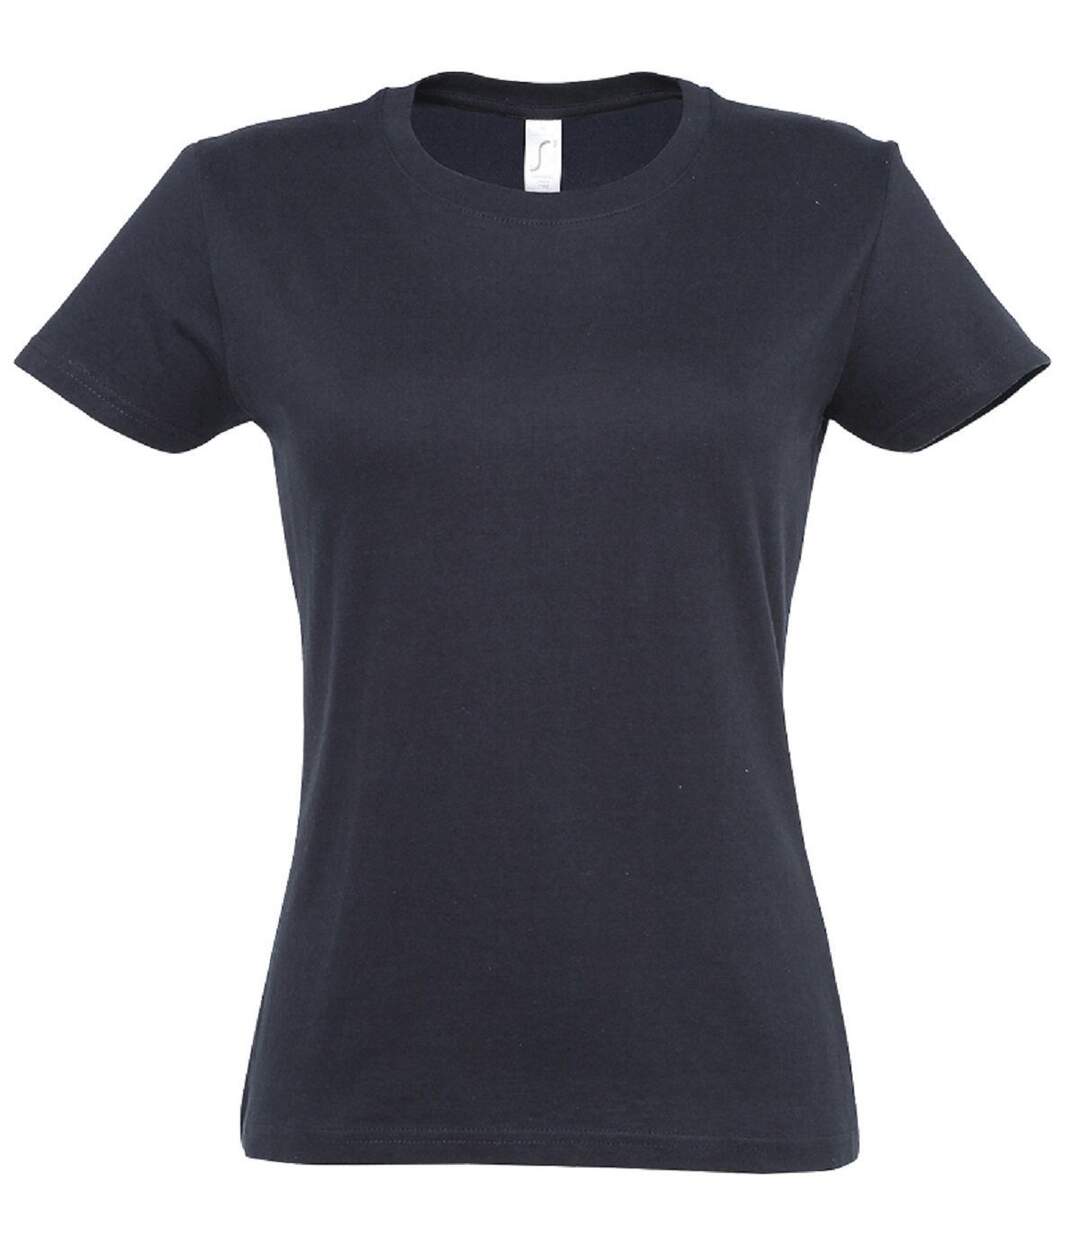 T-shirt manches courtes - Femme - 11502 - bleu marine foncé